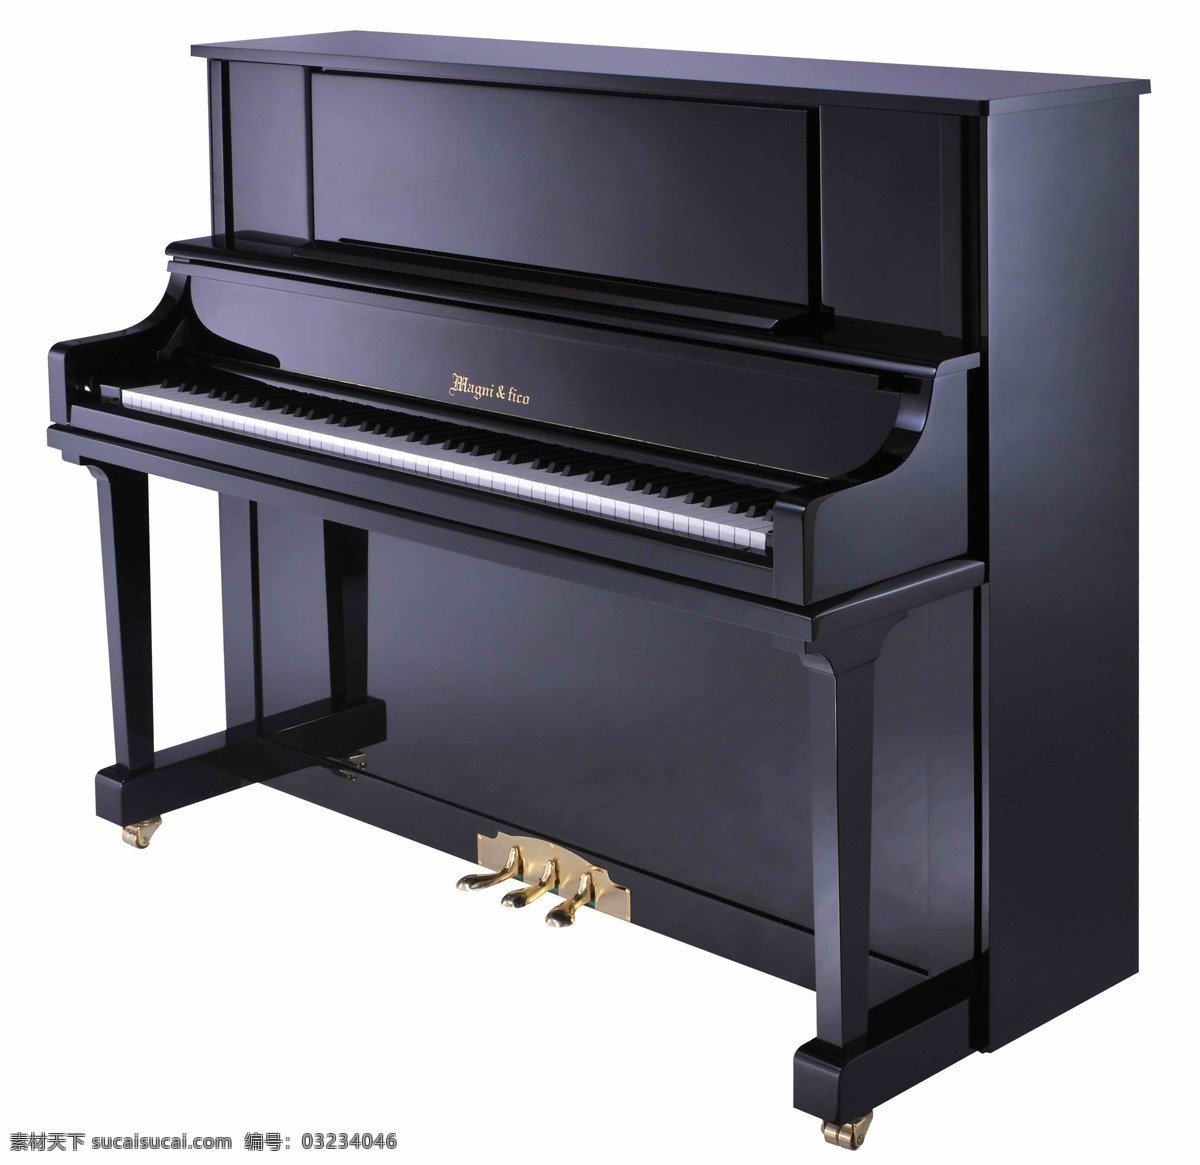 立式 钢琴 立式钢琴 88标准琴键 琴箱 琴盖 踏脚板 音色优美 乐器之王 西洋乐器 弹奏类乐器 乐器 舞蹈音乐 文化艺术